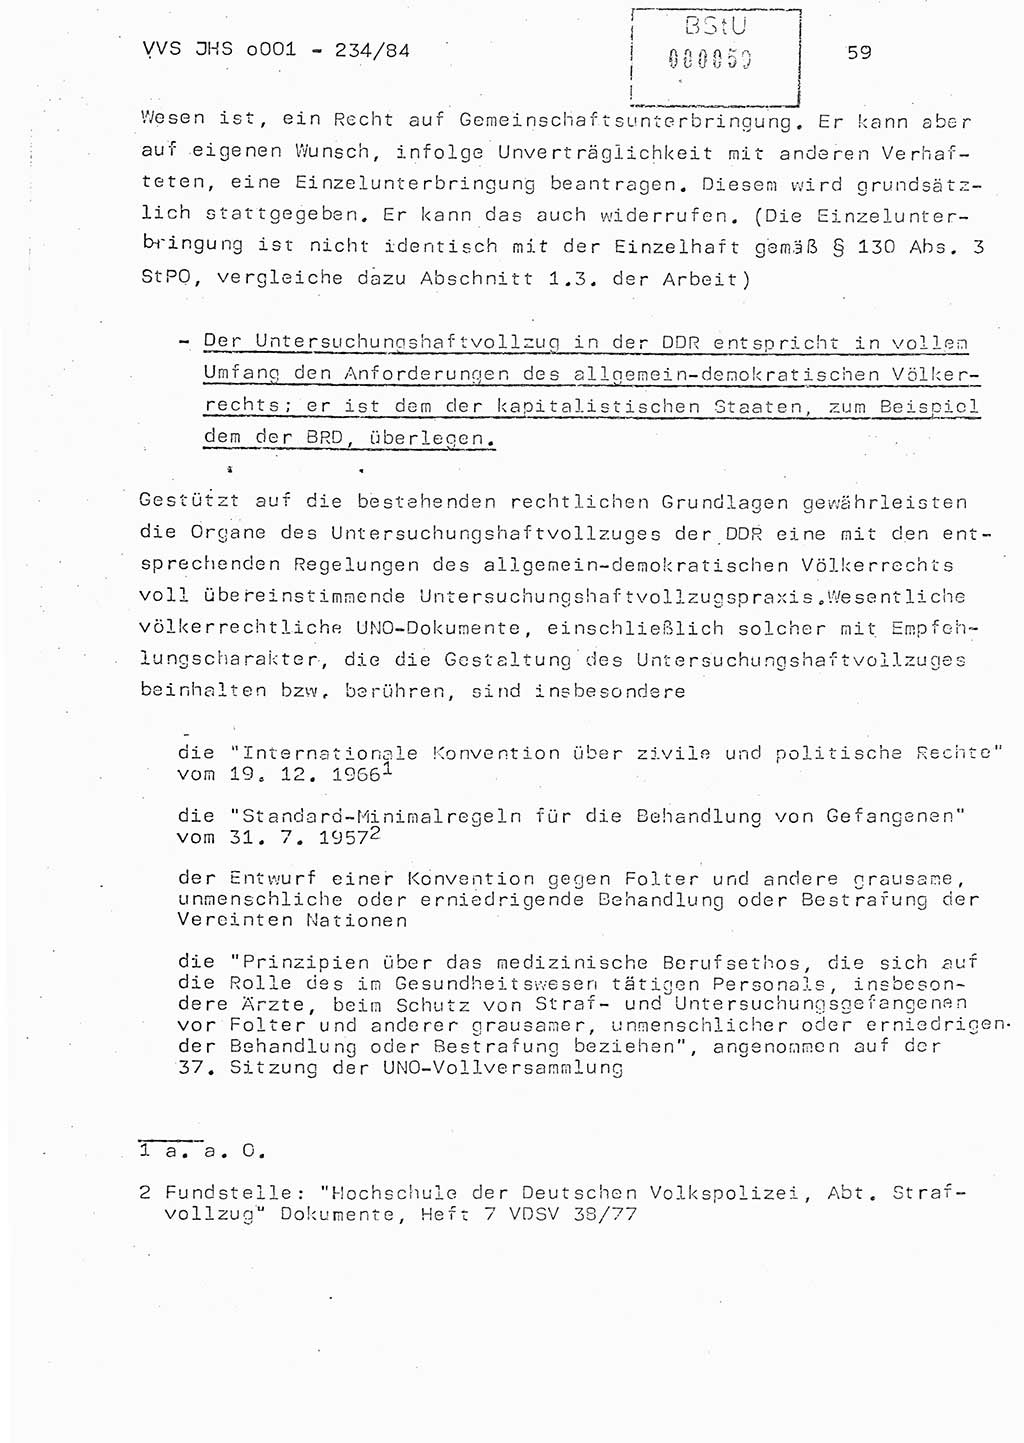 Dissertation Oberst Siegfried Rataizick (Abt. ⅩⅣ), Oberstleutnant Volkmar Heinz (Abt. ⅩⅣ), Oberstleutnant Werner Stein (HA Ⅸ), Hauptmann Heinz Conrad (JHS), Ministerium für Staatssicherheit (MfS) [Deutsche Demokratische Republik (DDR)], Juristische Hochschule (JHS), Vertrauliche Verschlußsache (VVS) o001-234/84, Potsdam 1984, Seite 59 (Diss. MfS DDR JHS VVS o001-234/84 1984, S. 59)